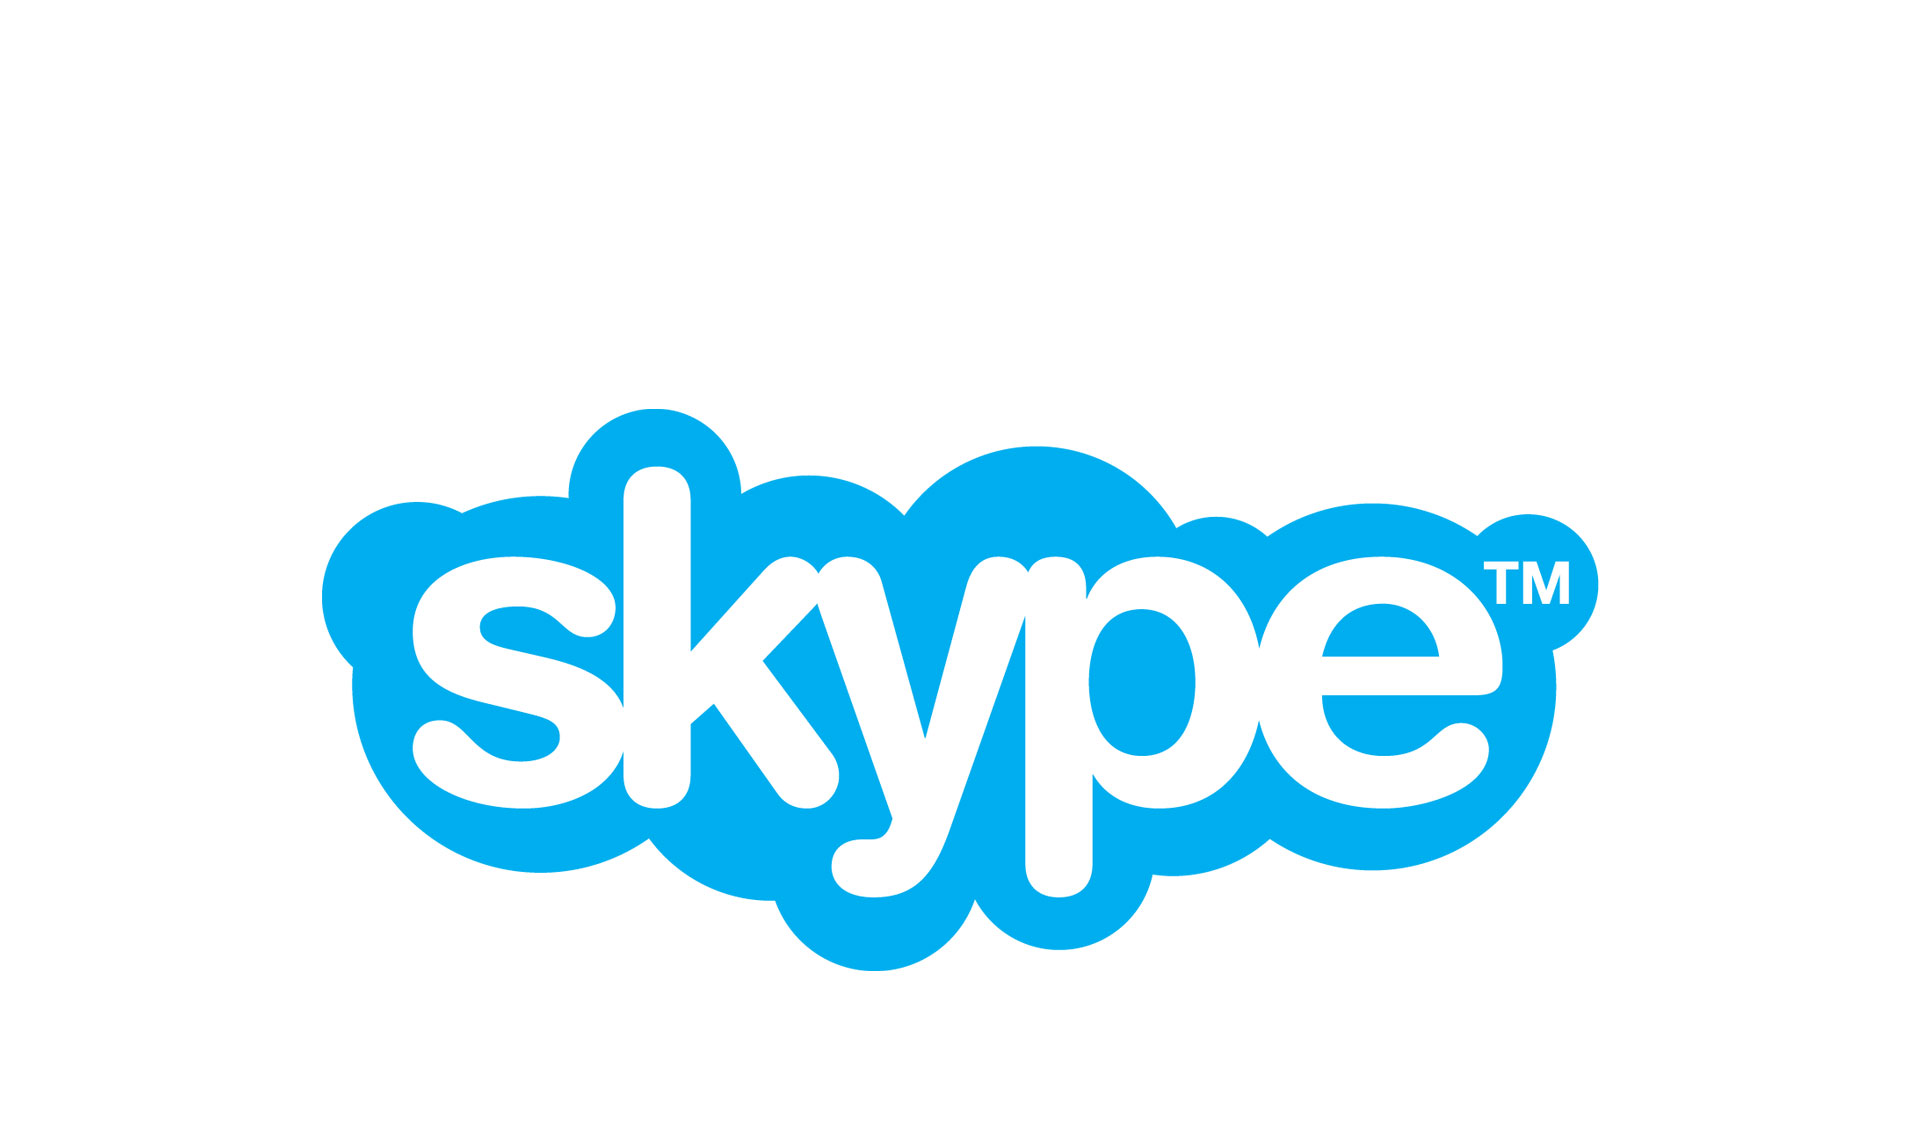 دانلود فیلم آموزشی کار با نرم افزار Skype